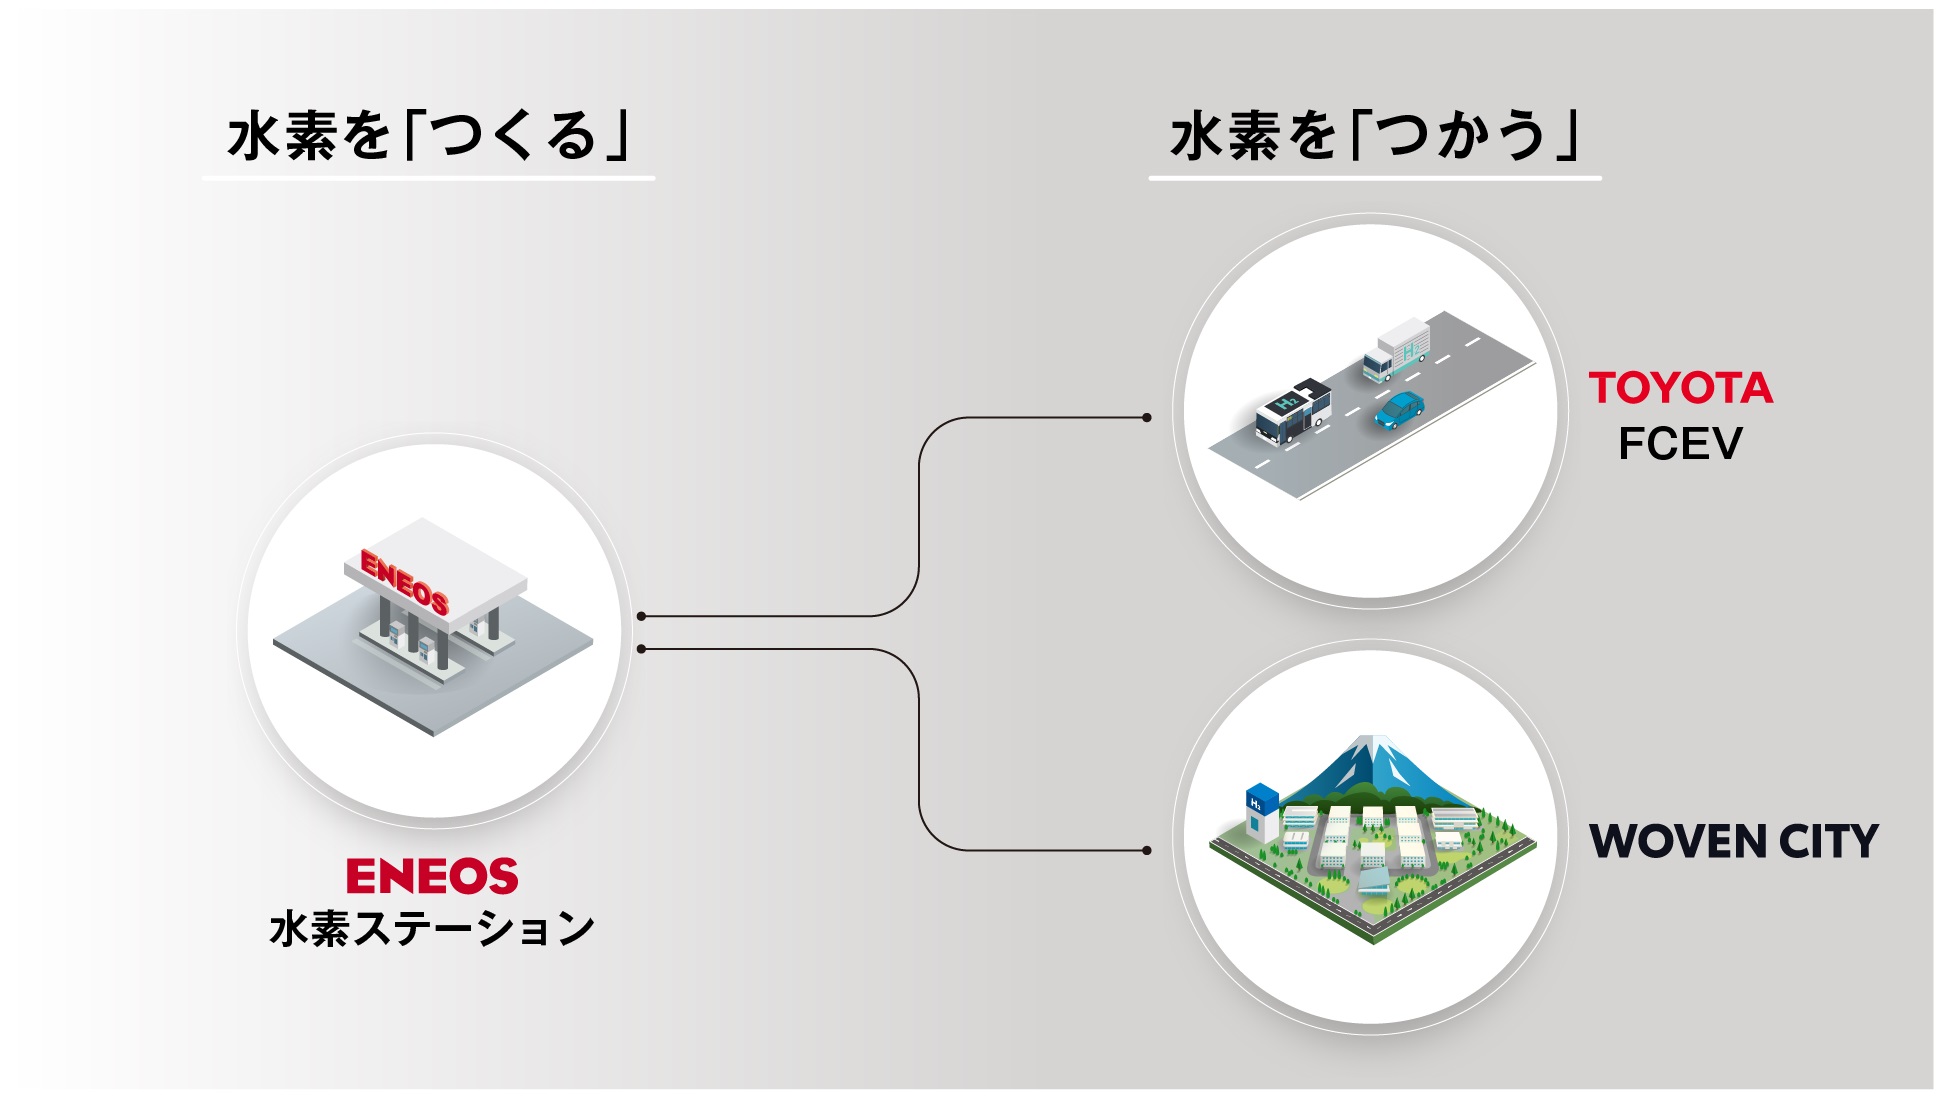 ウーブン・シティを起点としたCO2フリー水素の製造と利用を促進するためのENEOS、トヨタ、ウーブン・プラネットの共同を表した図